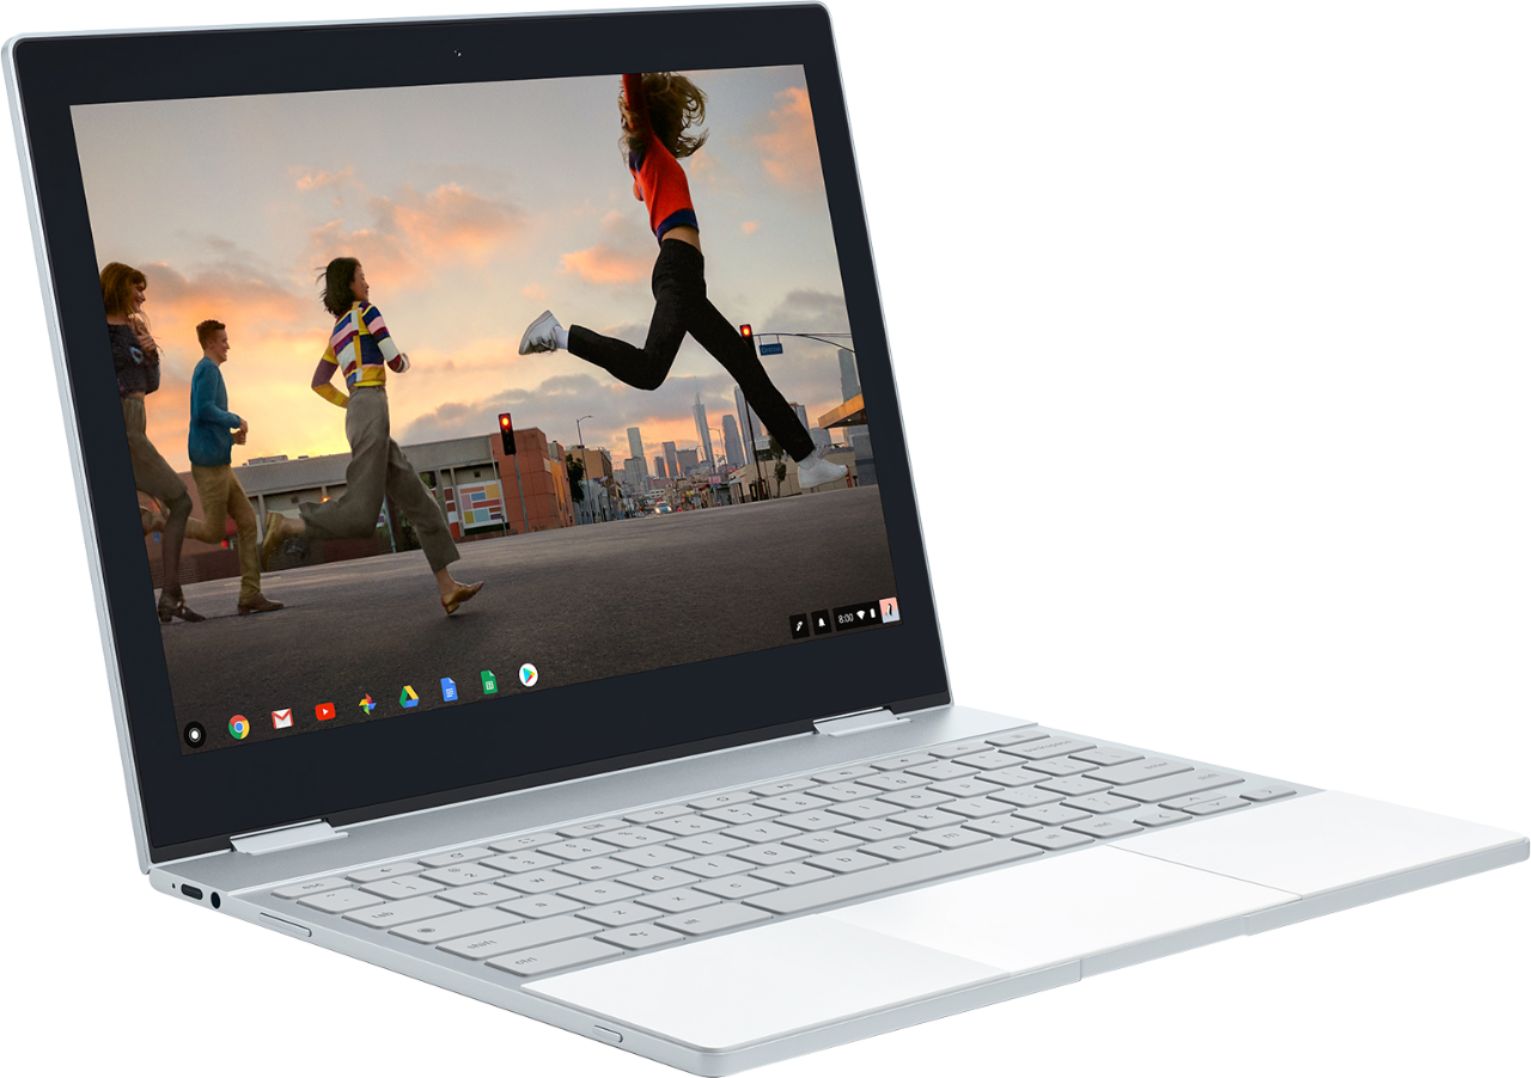 Google Pixelbook 12.3 Multi-Touch 2-in-1 Chromebook